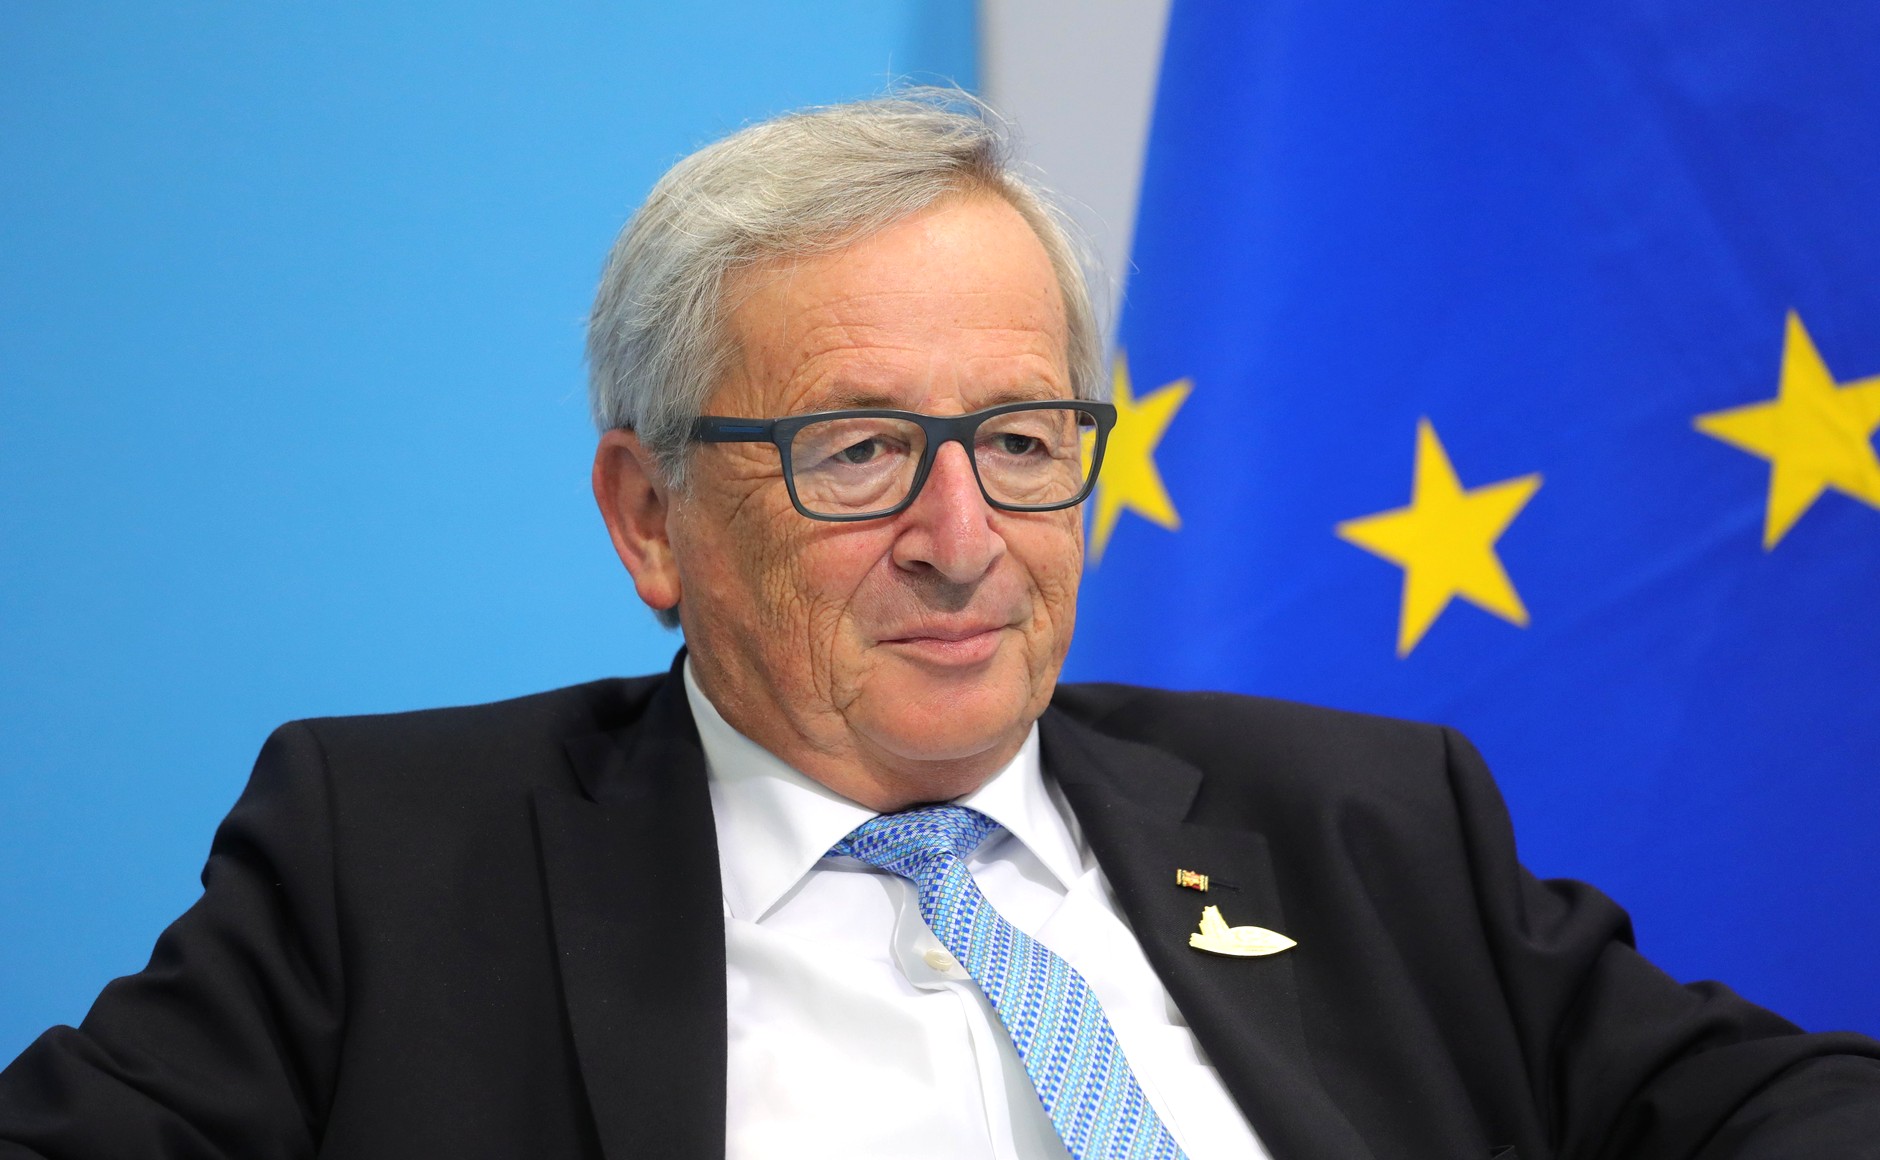 White House senior adviser Jared Kushner to meet EU's Juncker